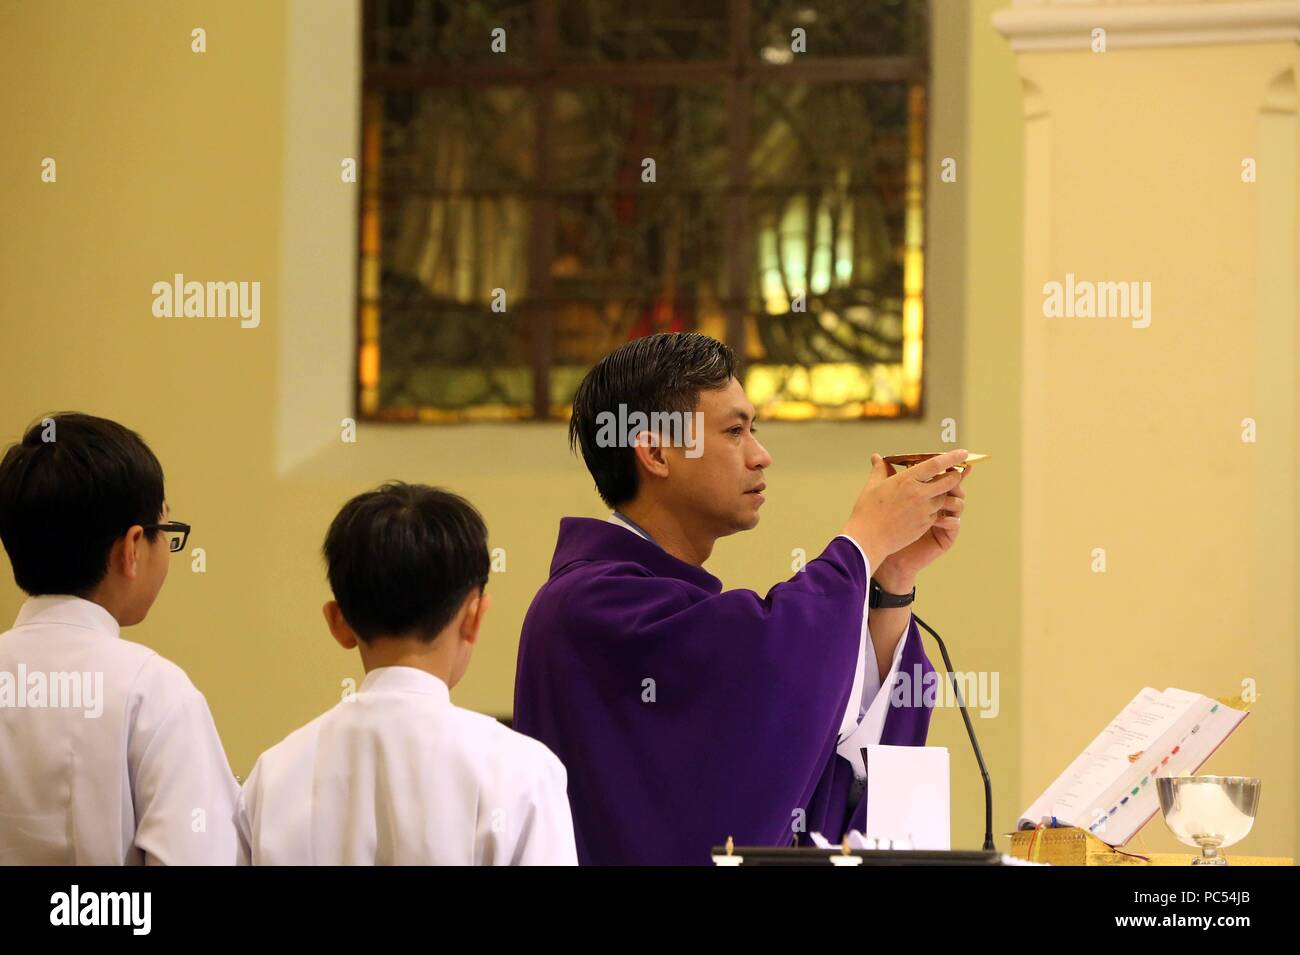 Dalat Kathedrale. Katholische Messe. Eucharistie unseres Herrn Jesus Christus. Dalat. Vietnam. | Verwendung weltweit Stockfoto